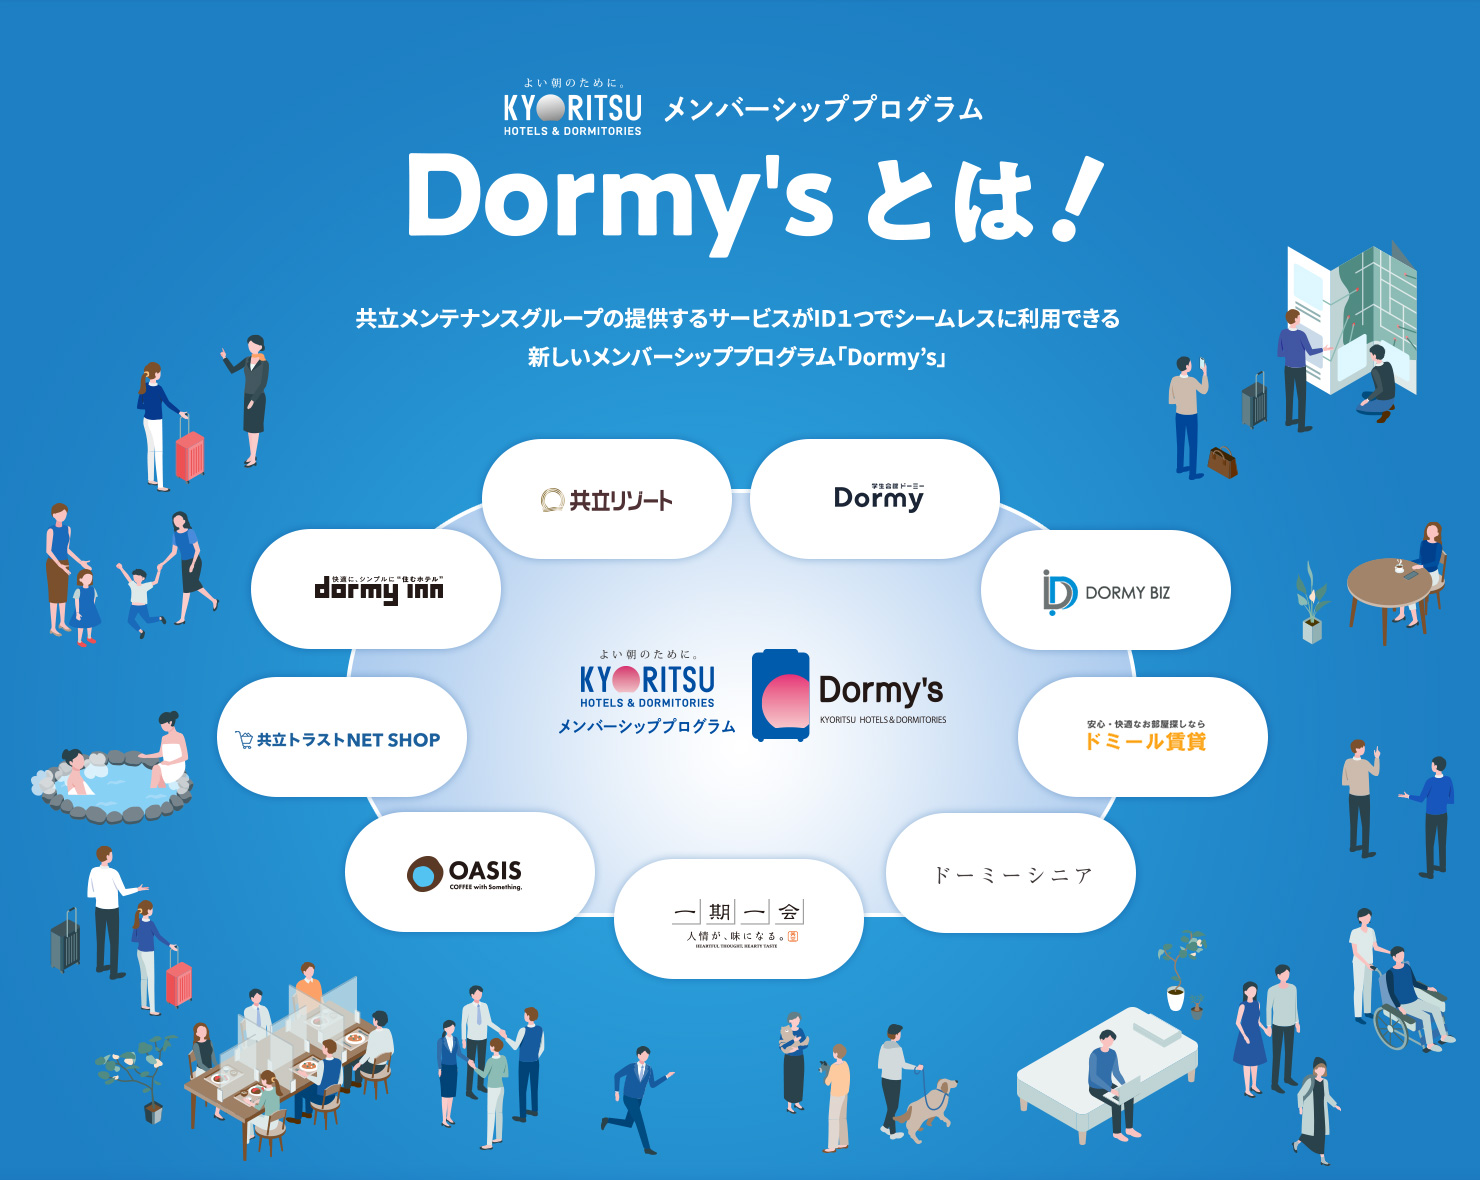 ベクトルスマートオブジェクト 共立メンテナンスグループの提供するサービスがID１つでシームレスに利用できる 新しいメンバーシッププログラム「Dormy’s」